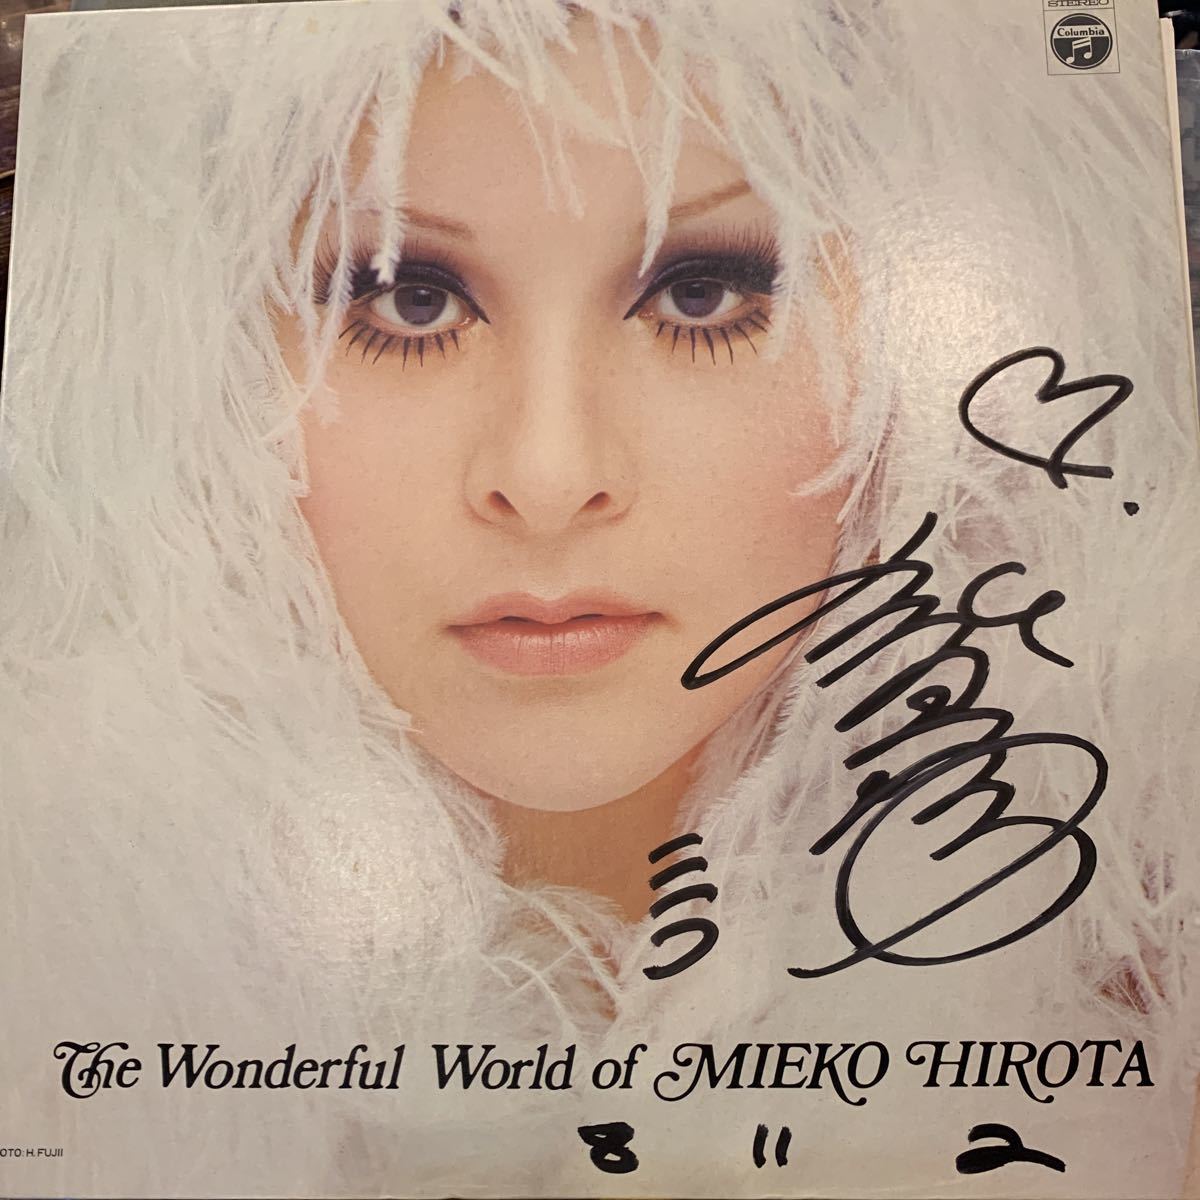 弘田三枝子 Mieko Hirota / 弘田三枝子の世界 The Wonderful World Of Mieko Hirota 中古レコード 直筆サインの画像1